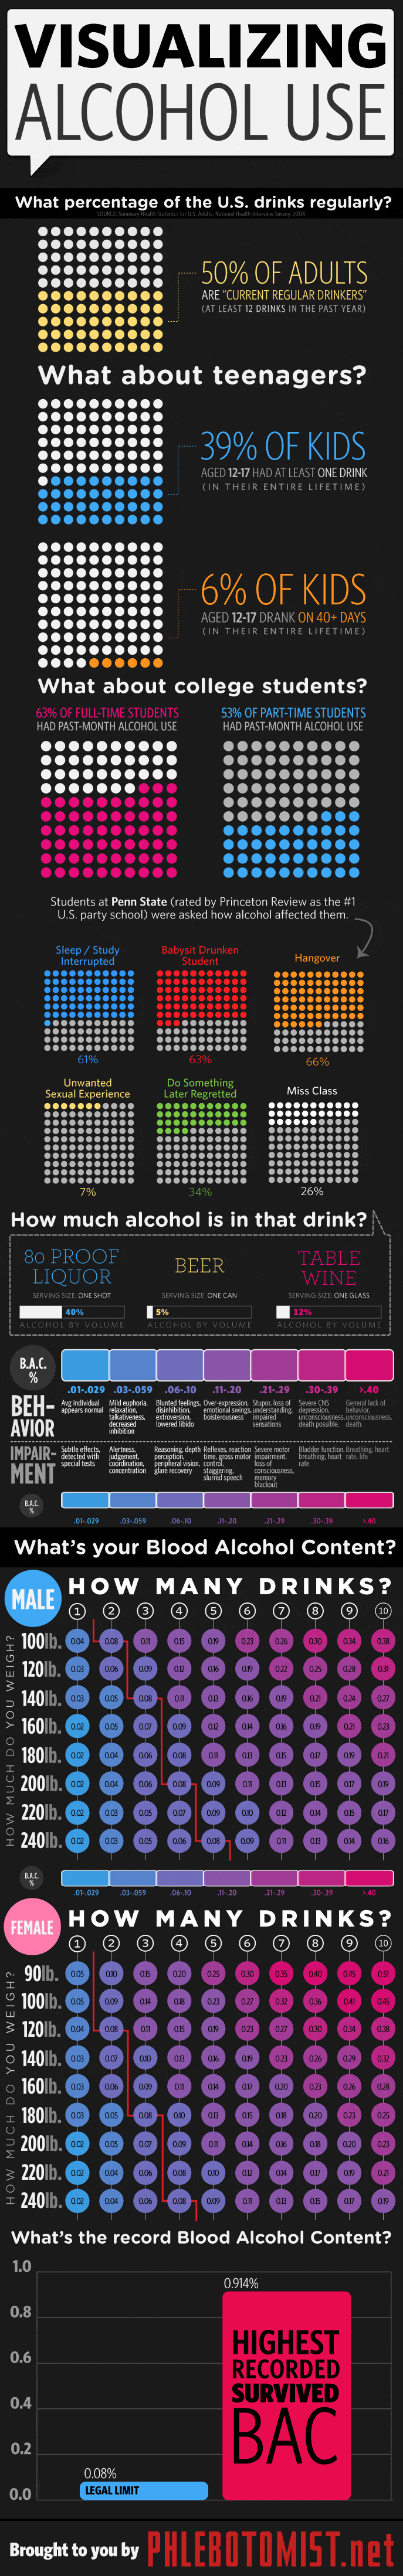 Visualizing Alcohol Use Infographic